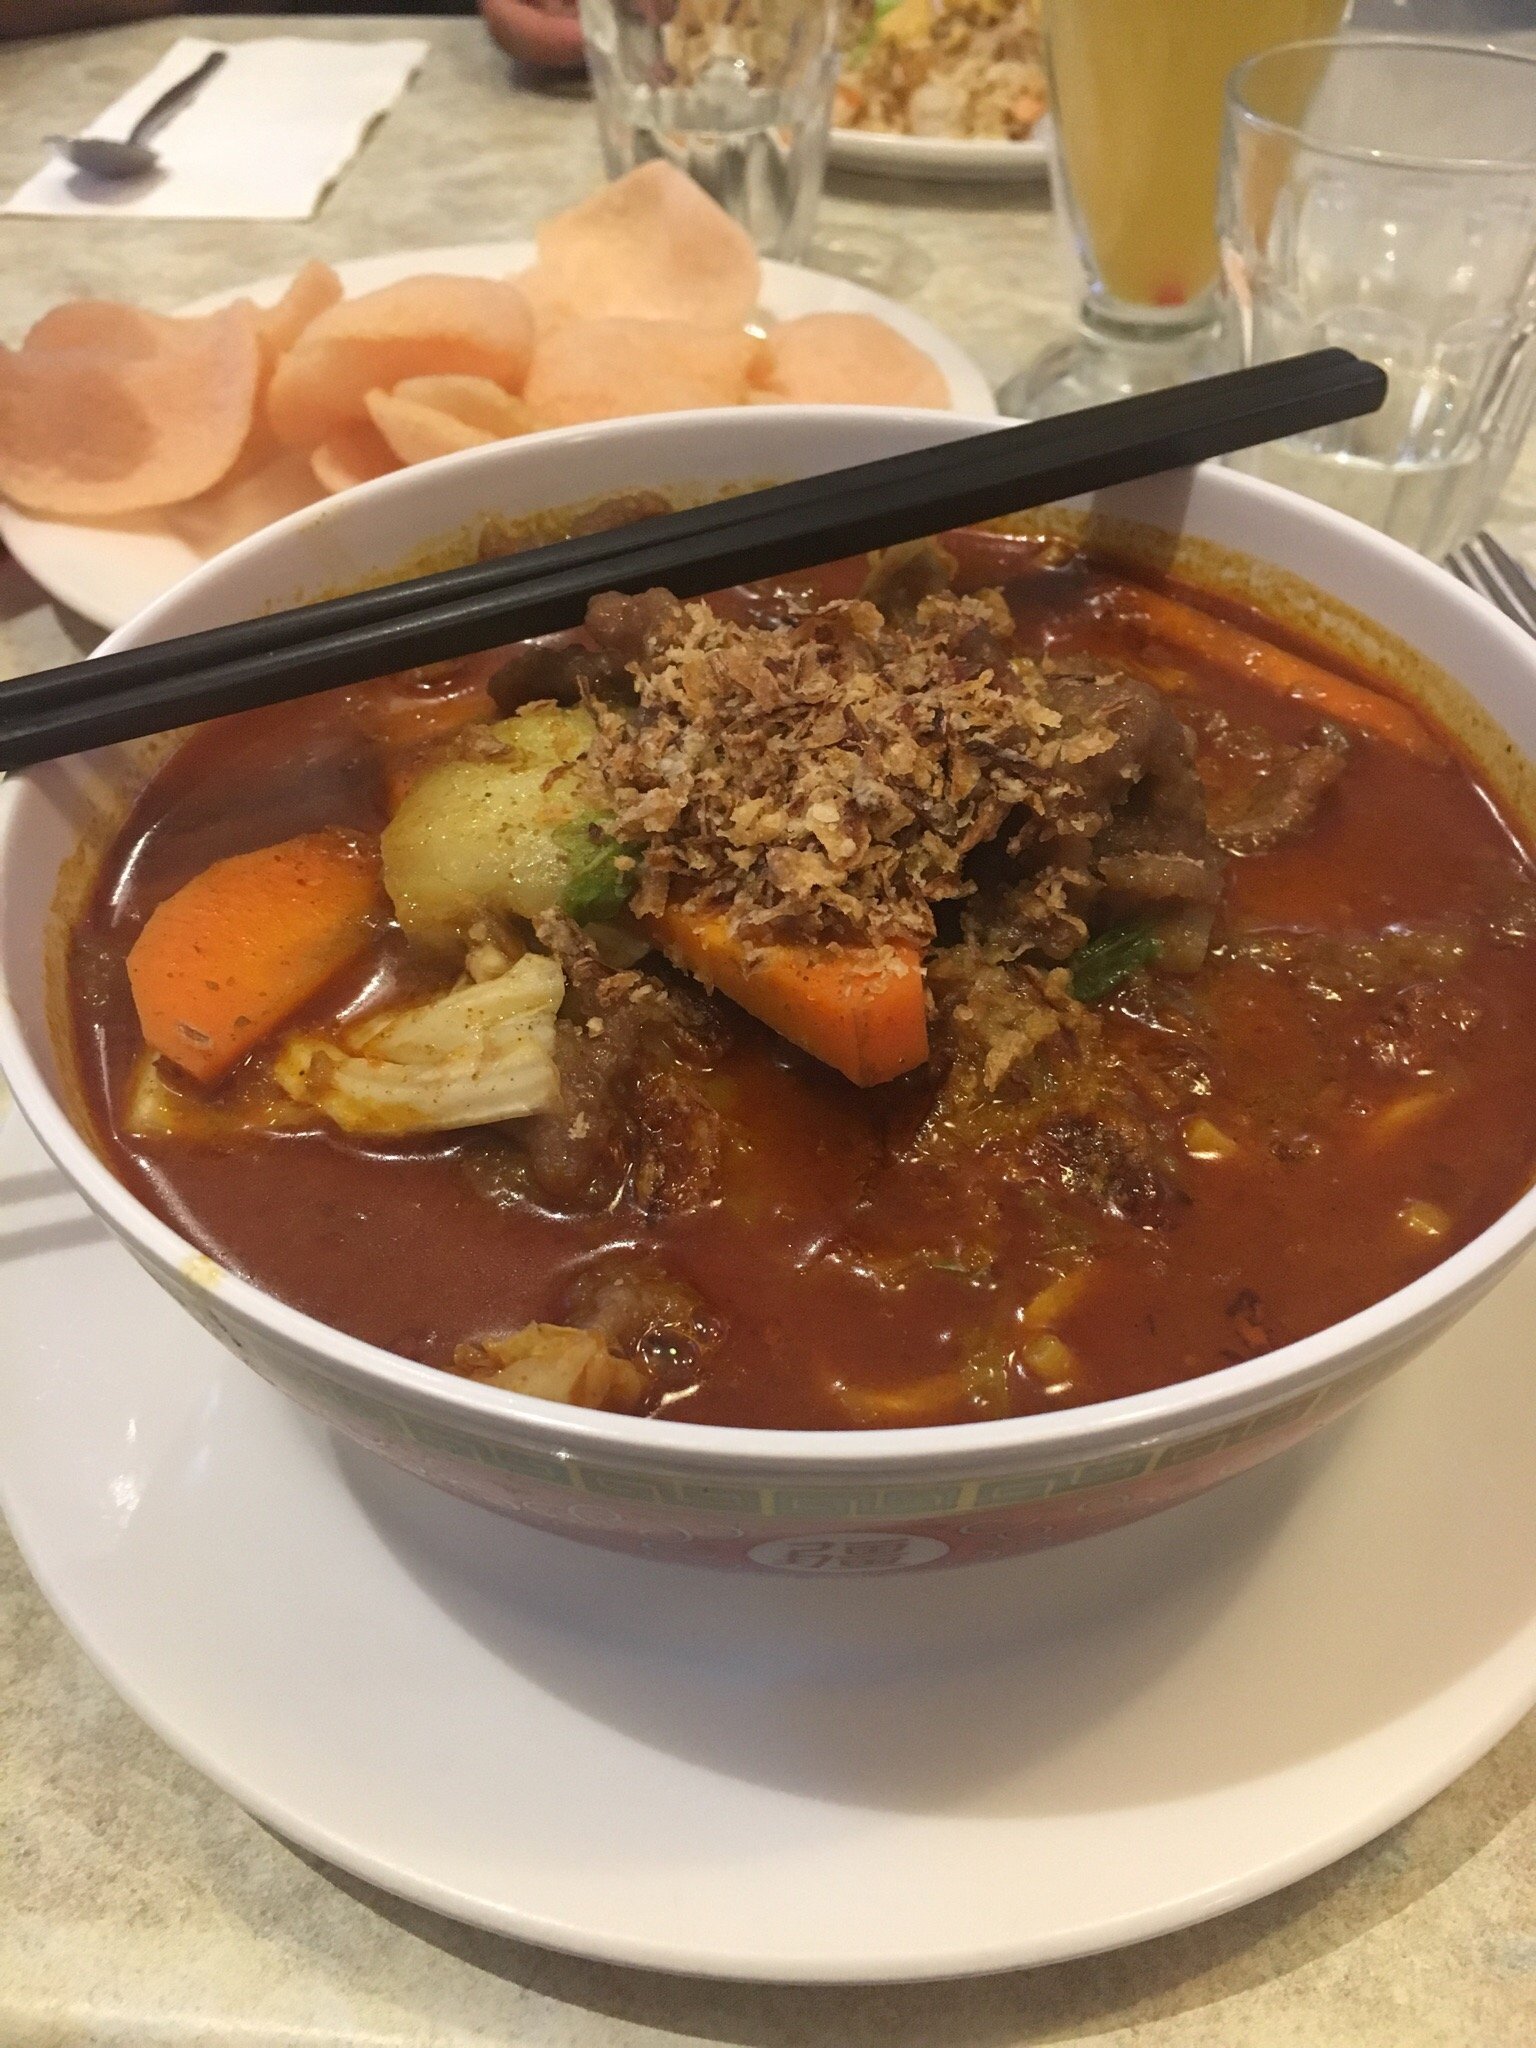 Kimberley Asian Cuisine - thumb 1